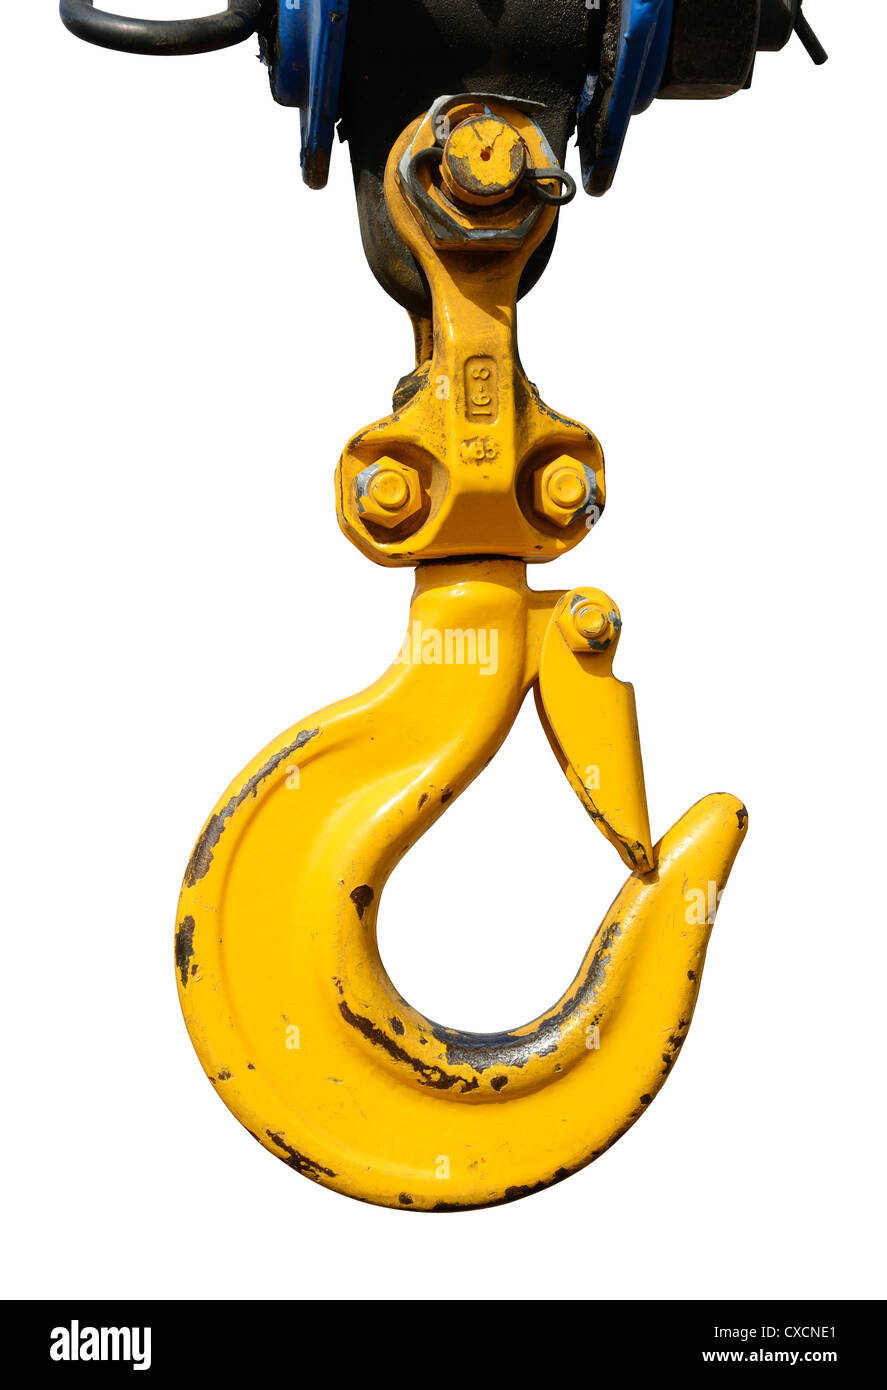 Crochet de levage de la grue jaune avec loquet de sécurité Banque D'Images